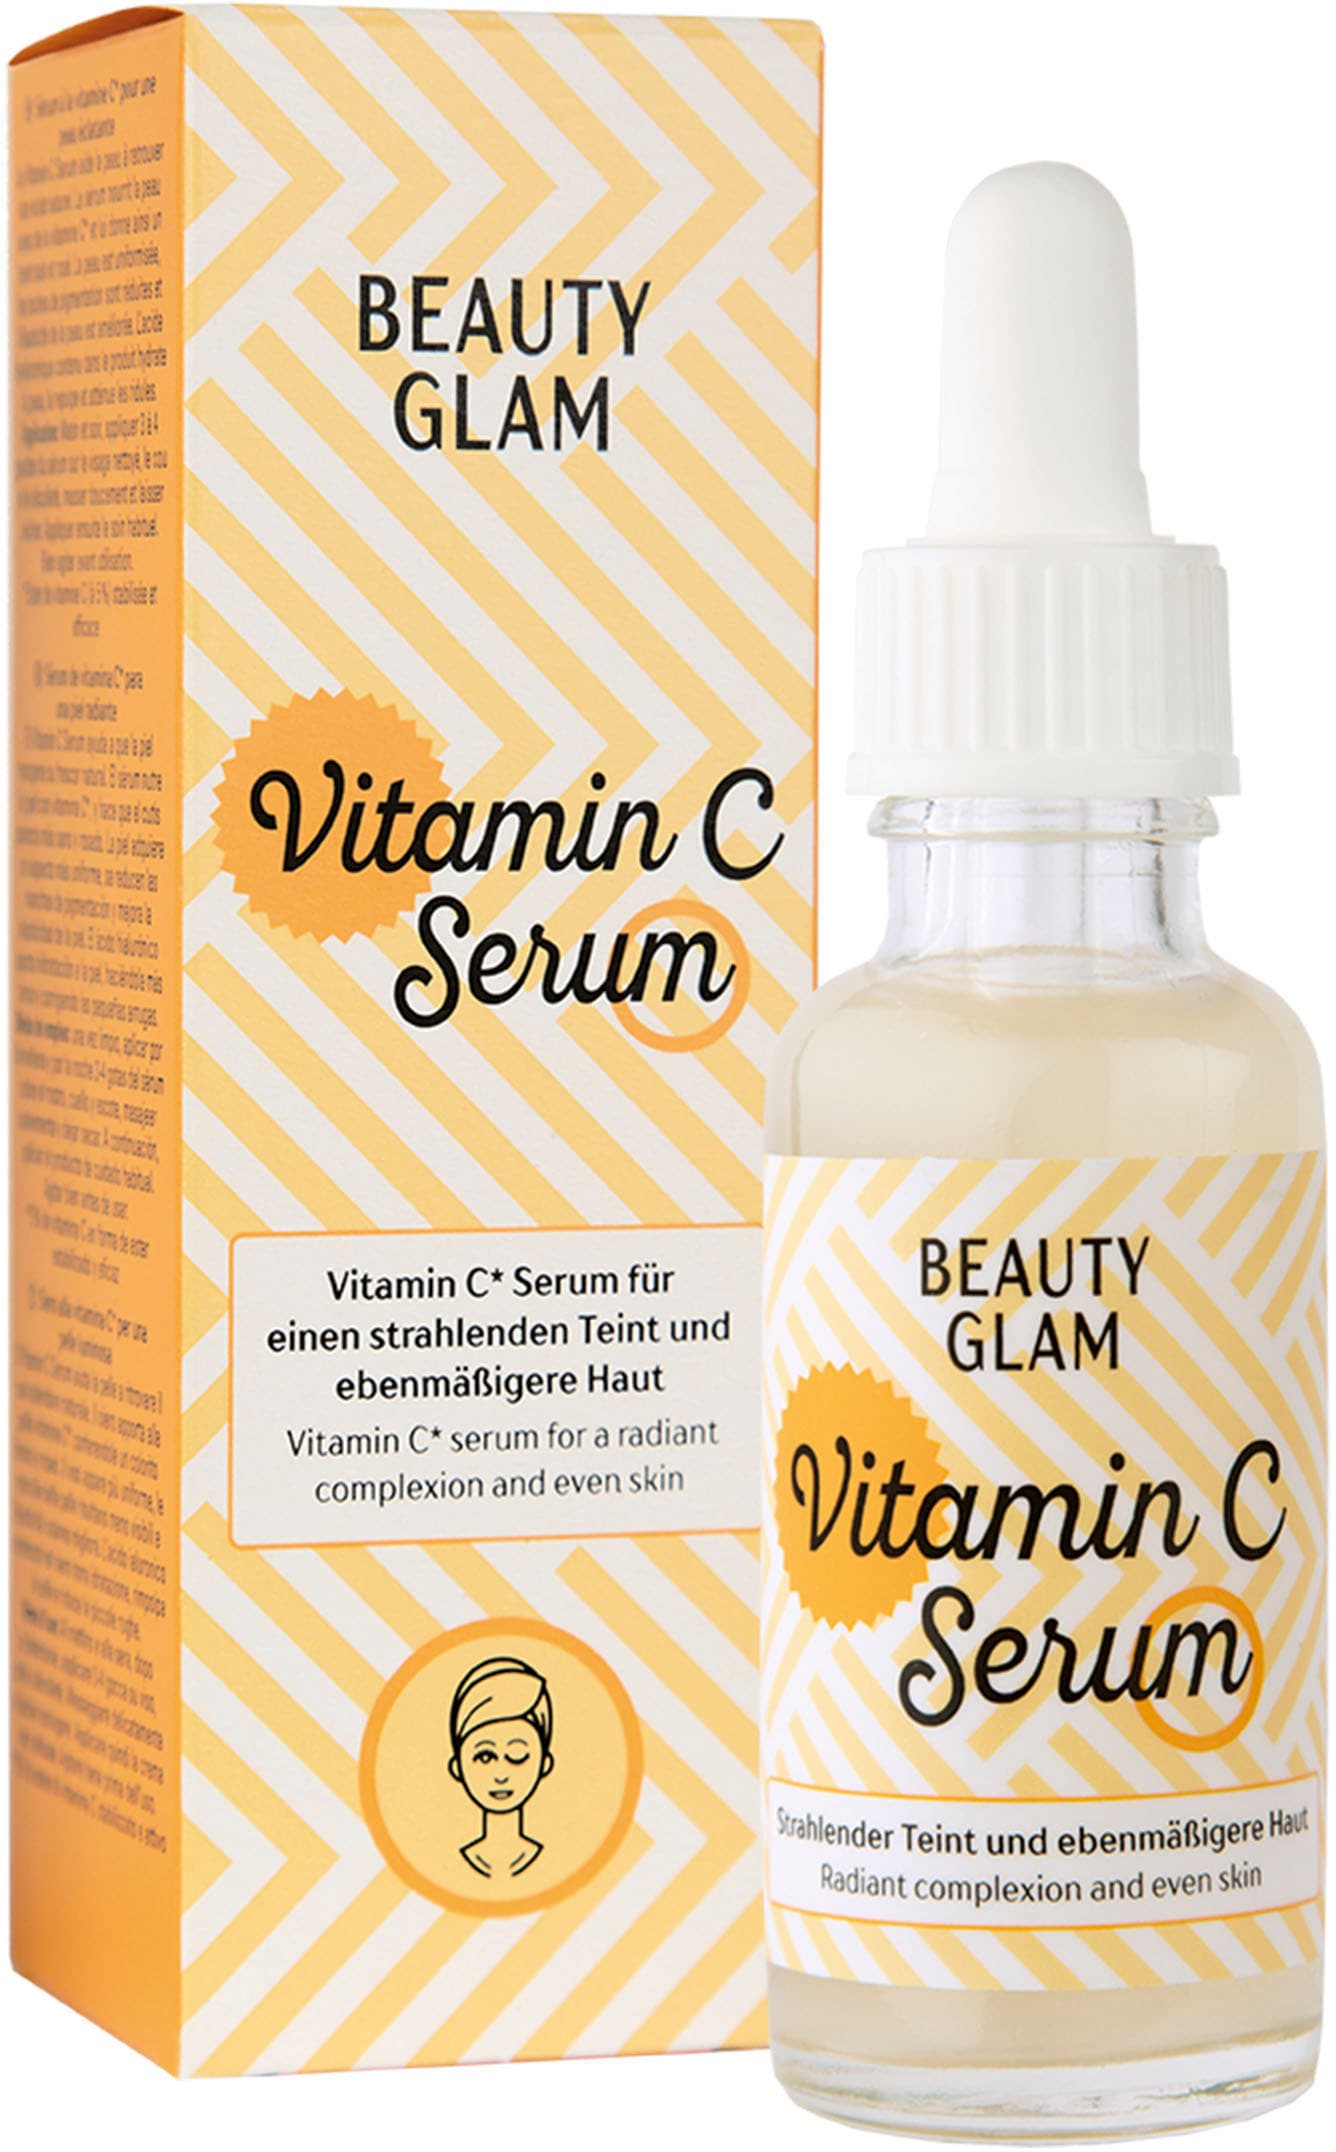 BEAUTY GLAM Serum« C OTTOversand Vitamin »Beauty Glam bei Gesichtsserum